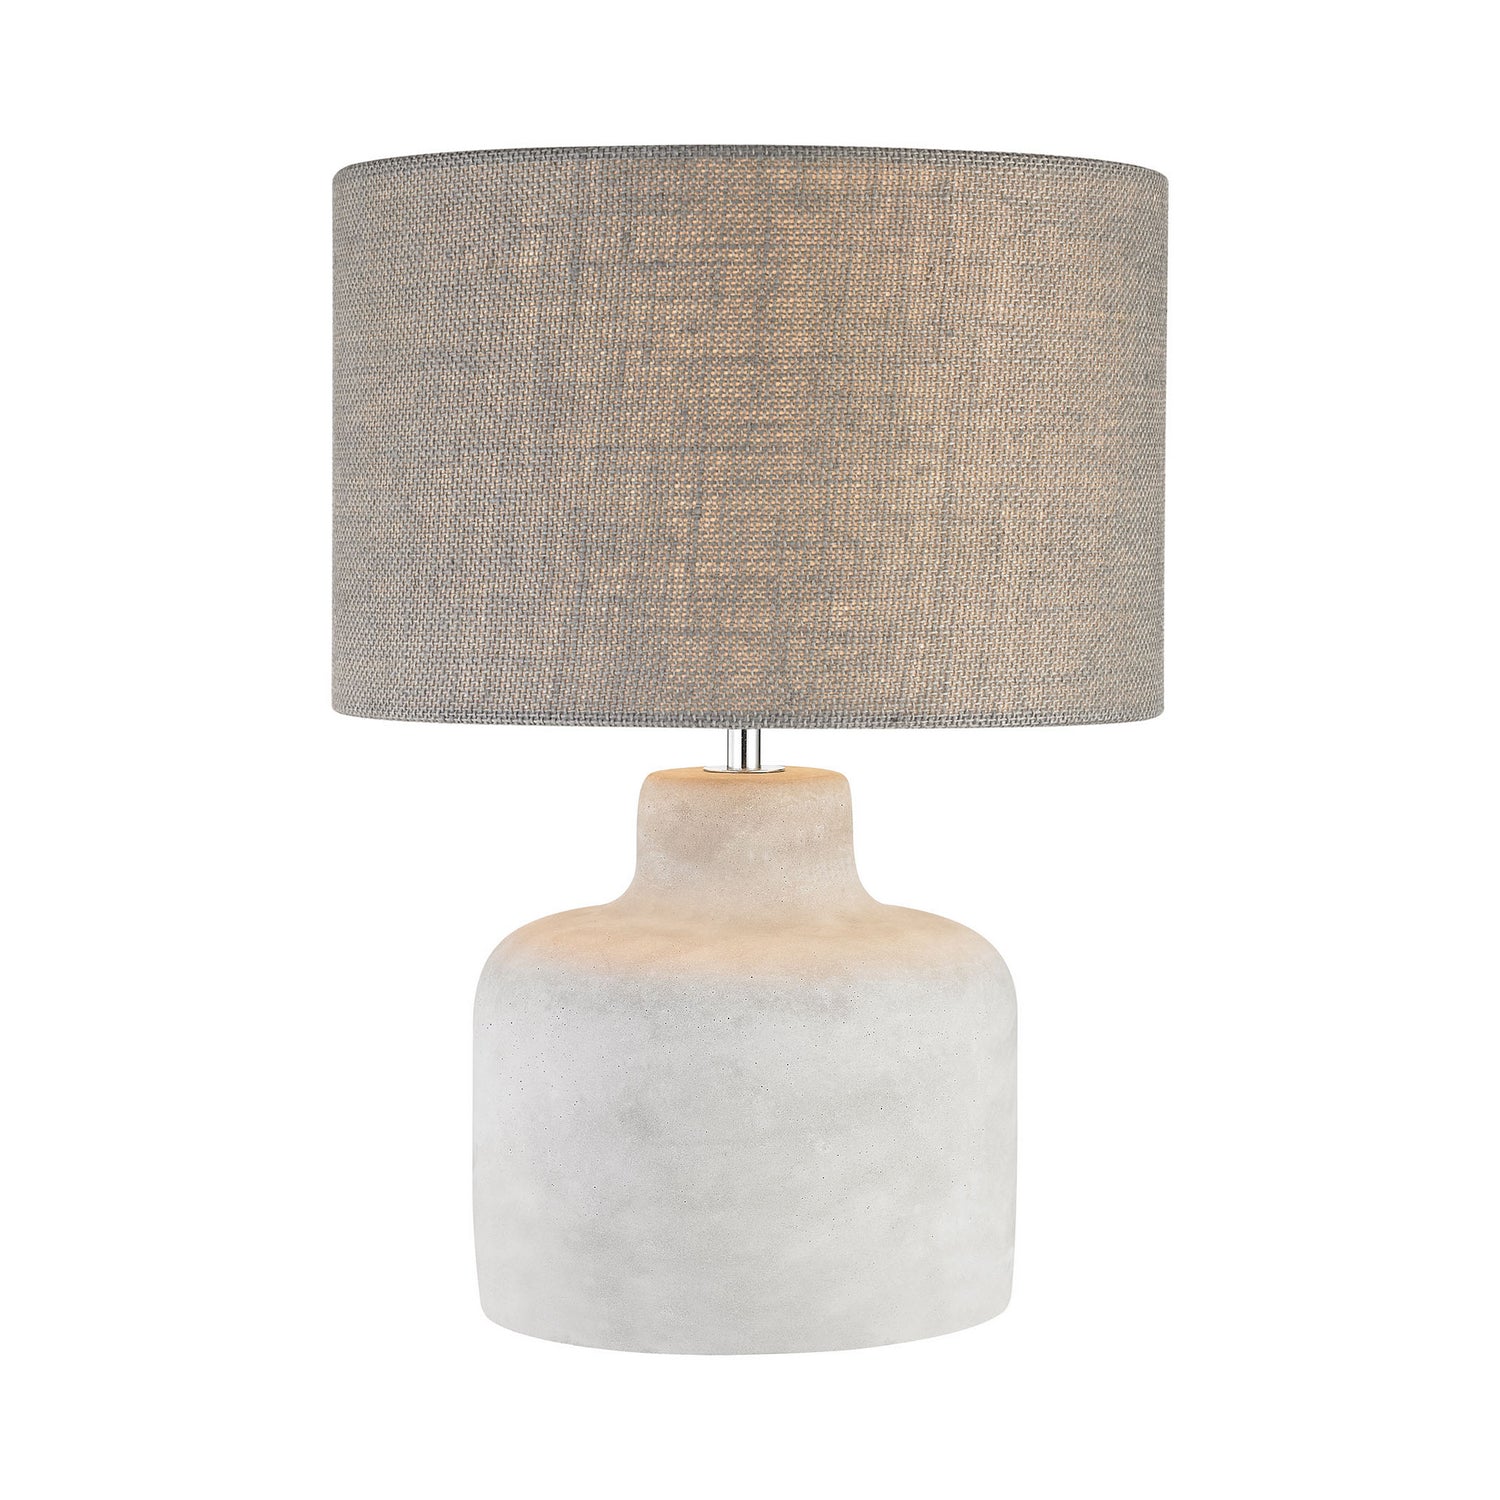 ELK Home - D2950 - One Light Table Lamp - Rockport - Polished Concrete